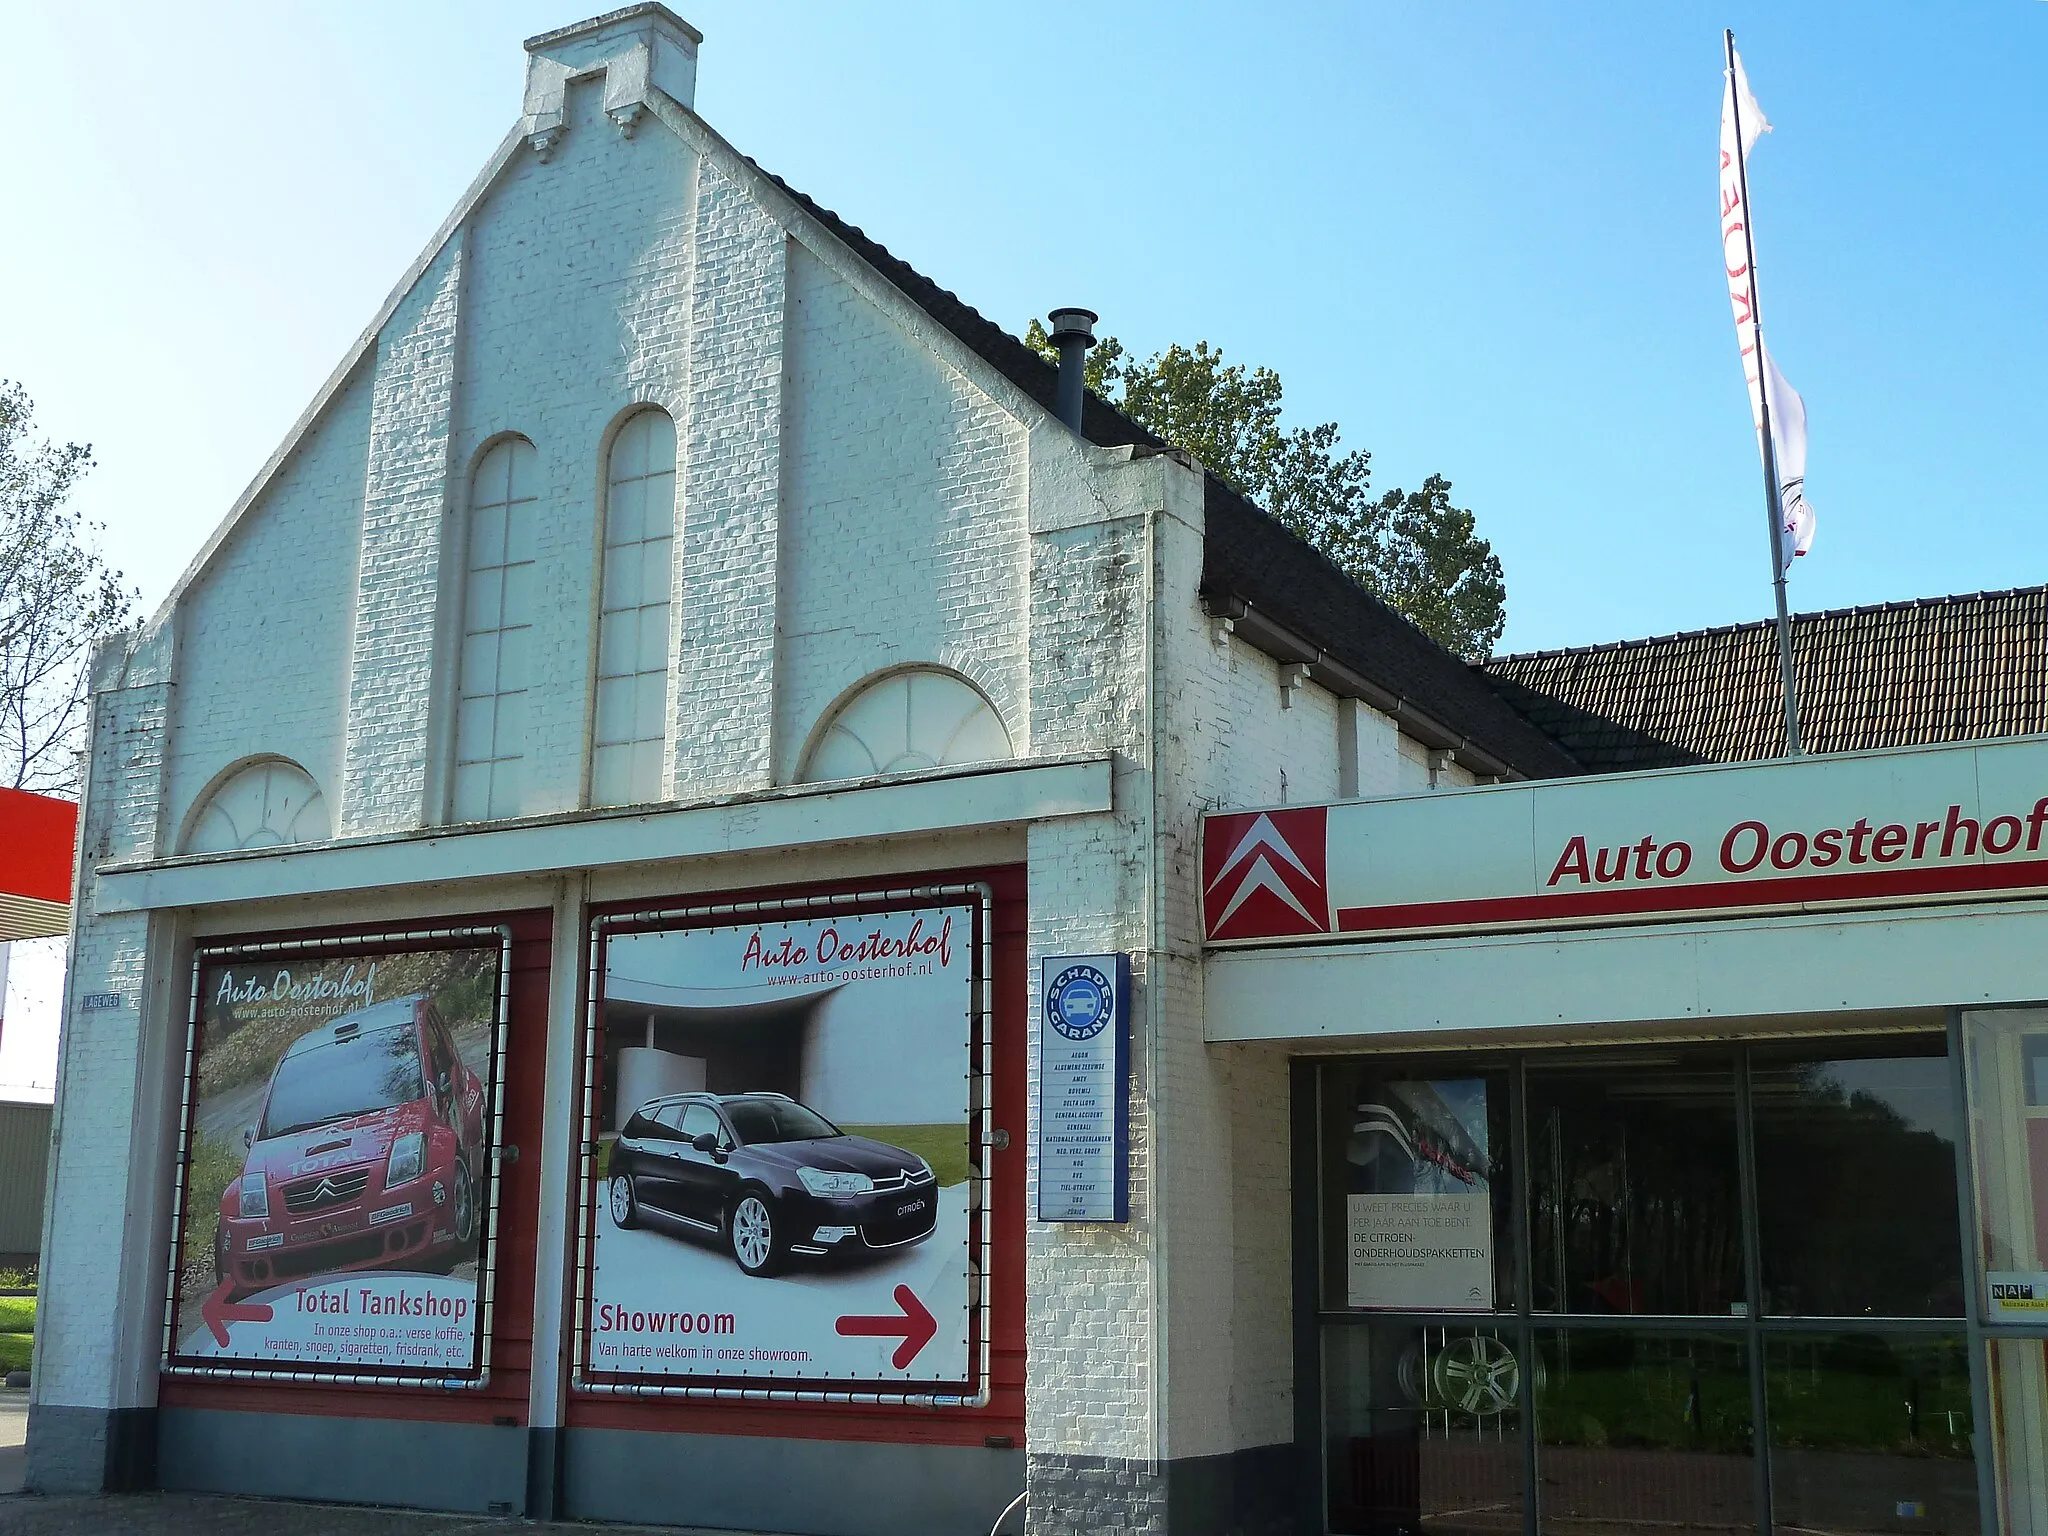 Photo showing: Voormalige gereformeerde kerk van Grijpskerk (van 1901-1938), sindsdien autobedrijf Oosterhof. Sinds 1938 in dit gebouw. Links stond vroeger de pastorie (nu tankstation), rechts de kosterij (later verbouwd tot autobedrijf.